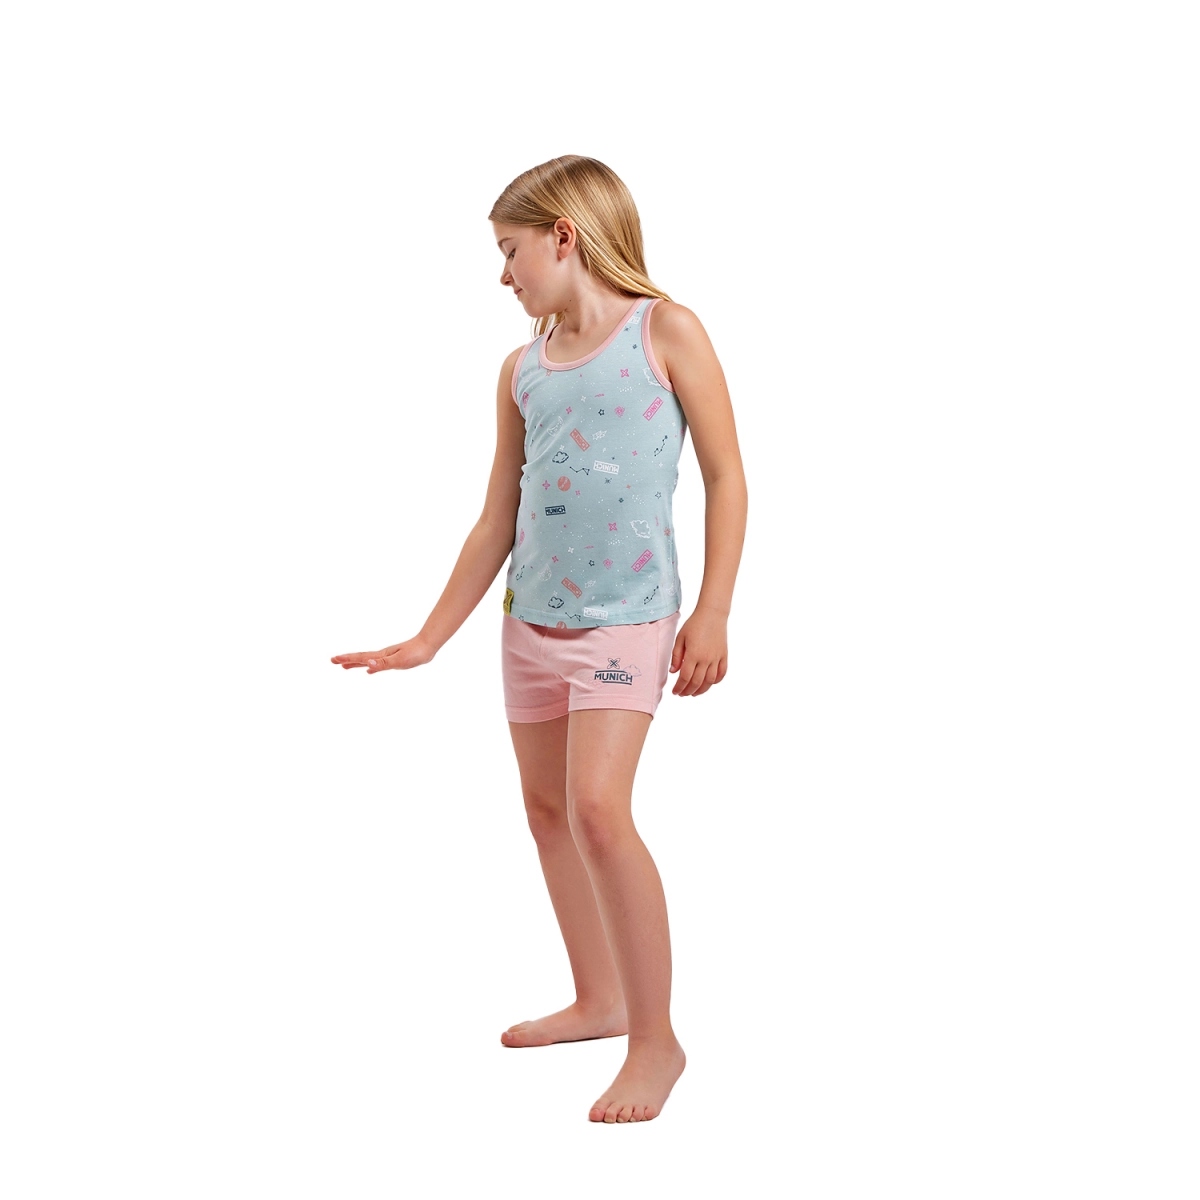 Pijama de tirantes y cuello redondo Munich DH1200 niña Talla: 6 AÑOS Color: Multicolor DH1200.6 AÑOS